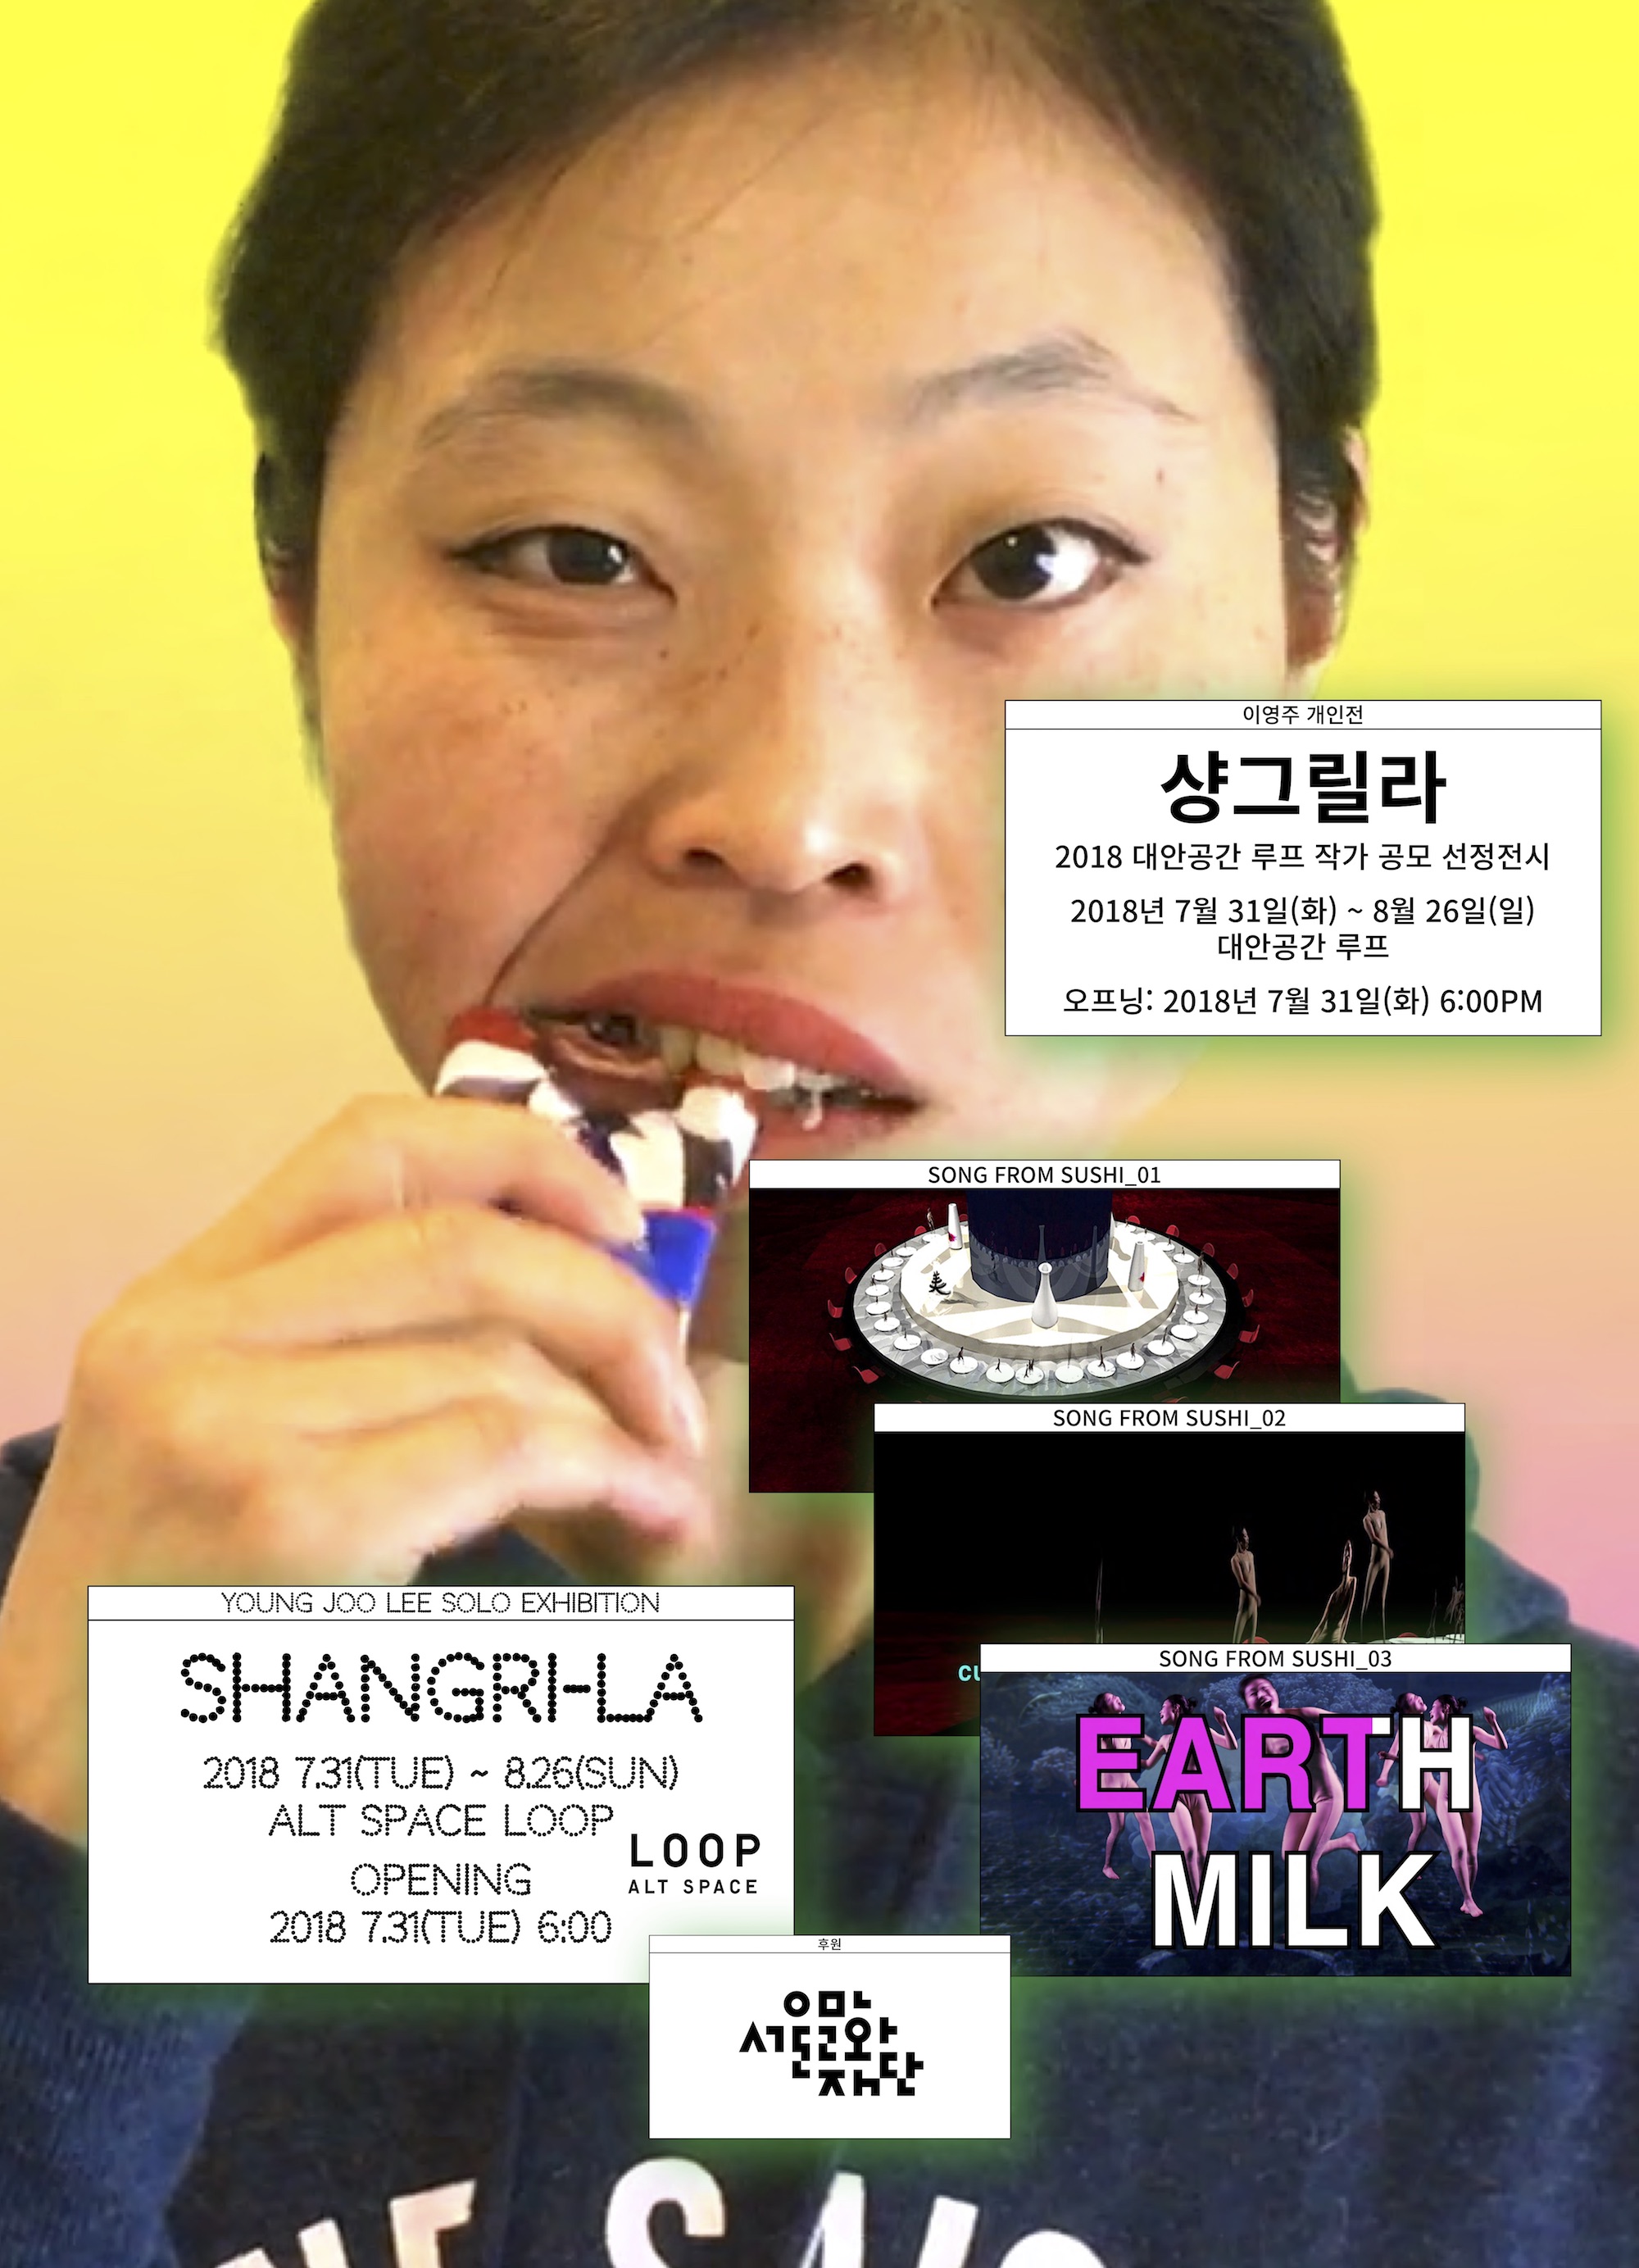 Young Joo Lee Solo Exhibition: Shangri-La